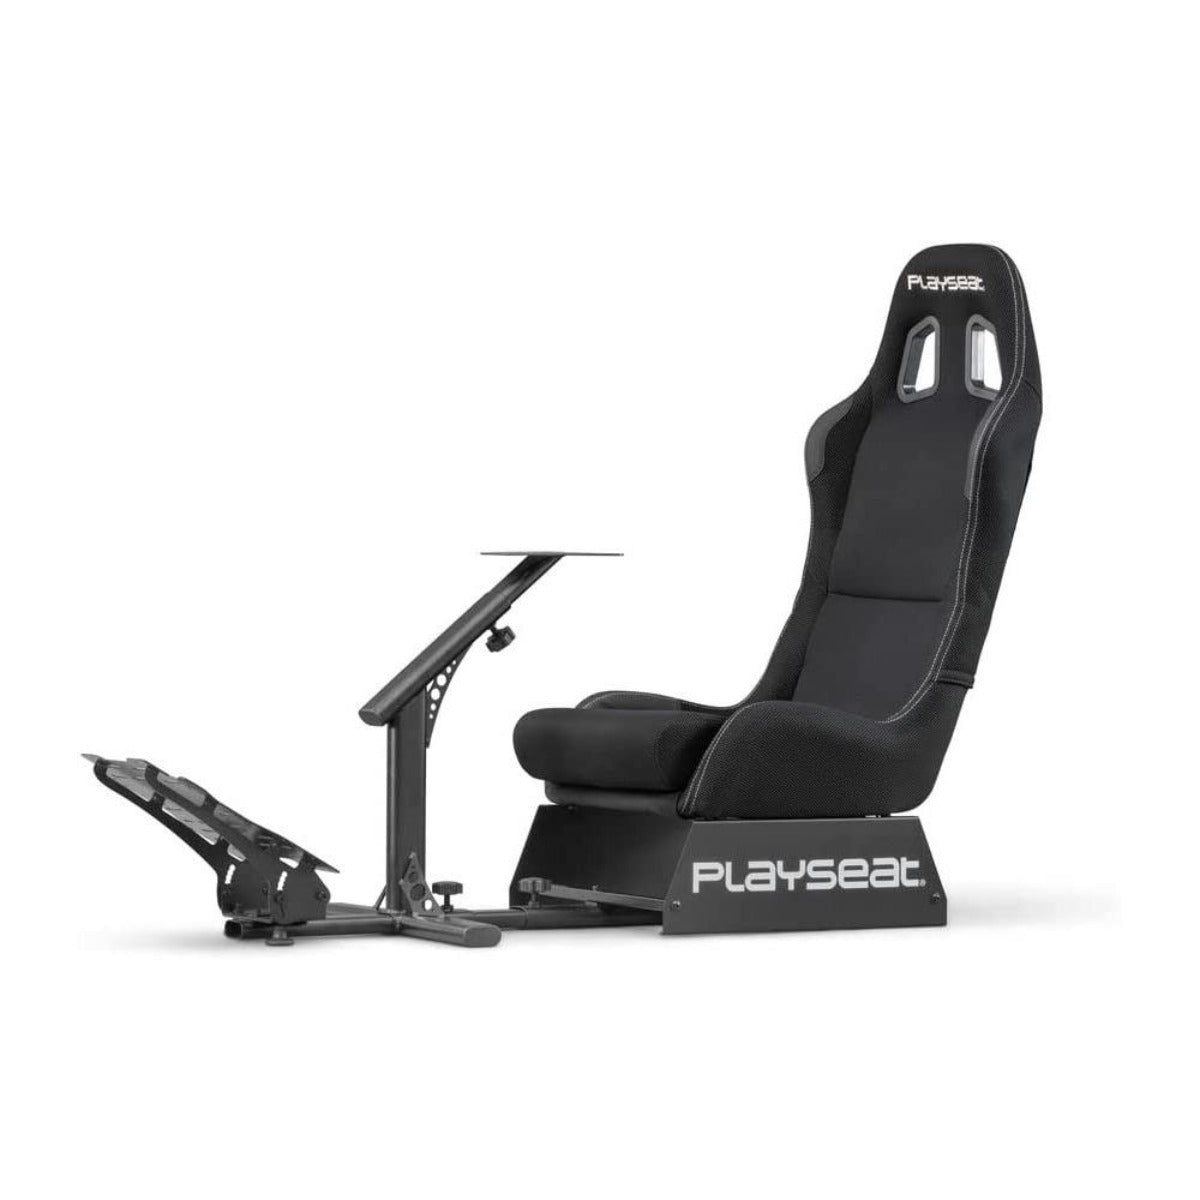 Playseat Evolution Actifit Black Racing Simulator Seat